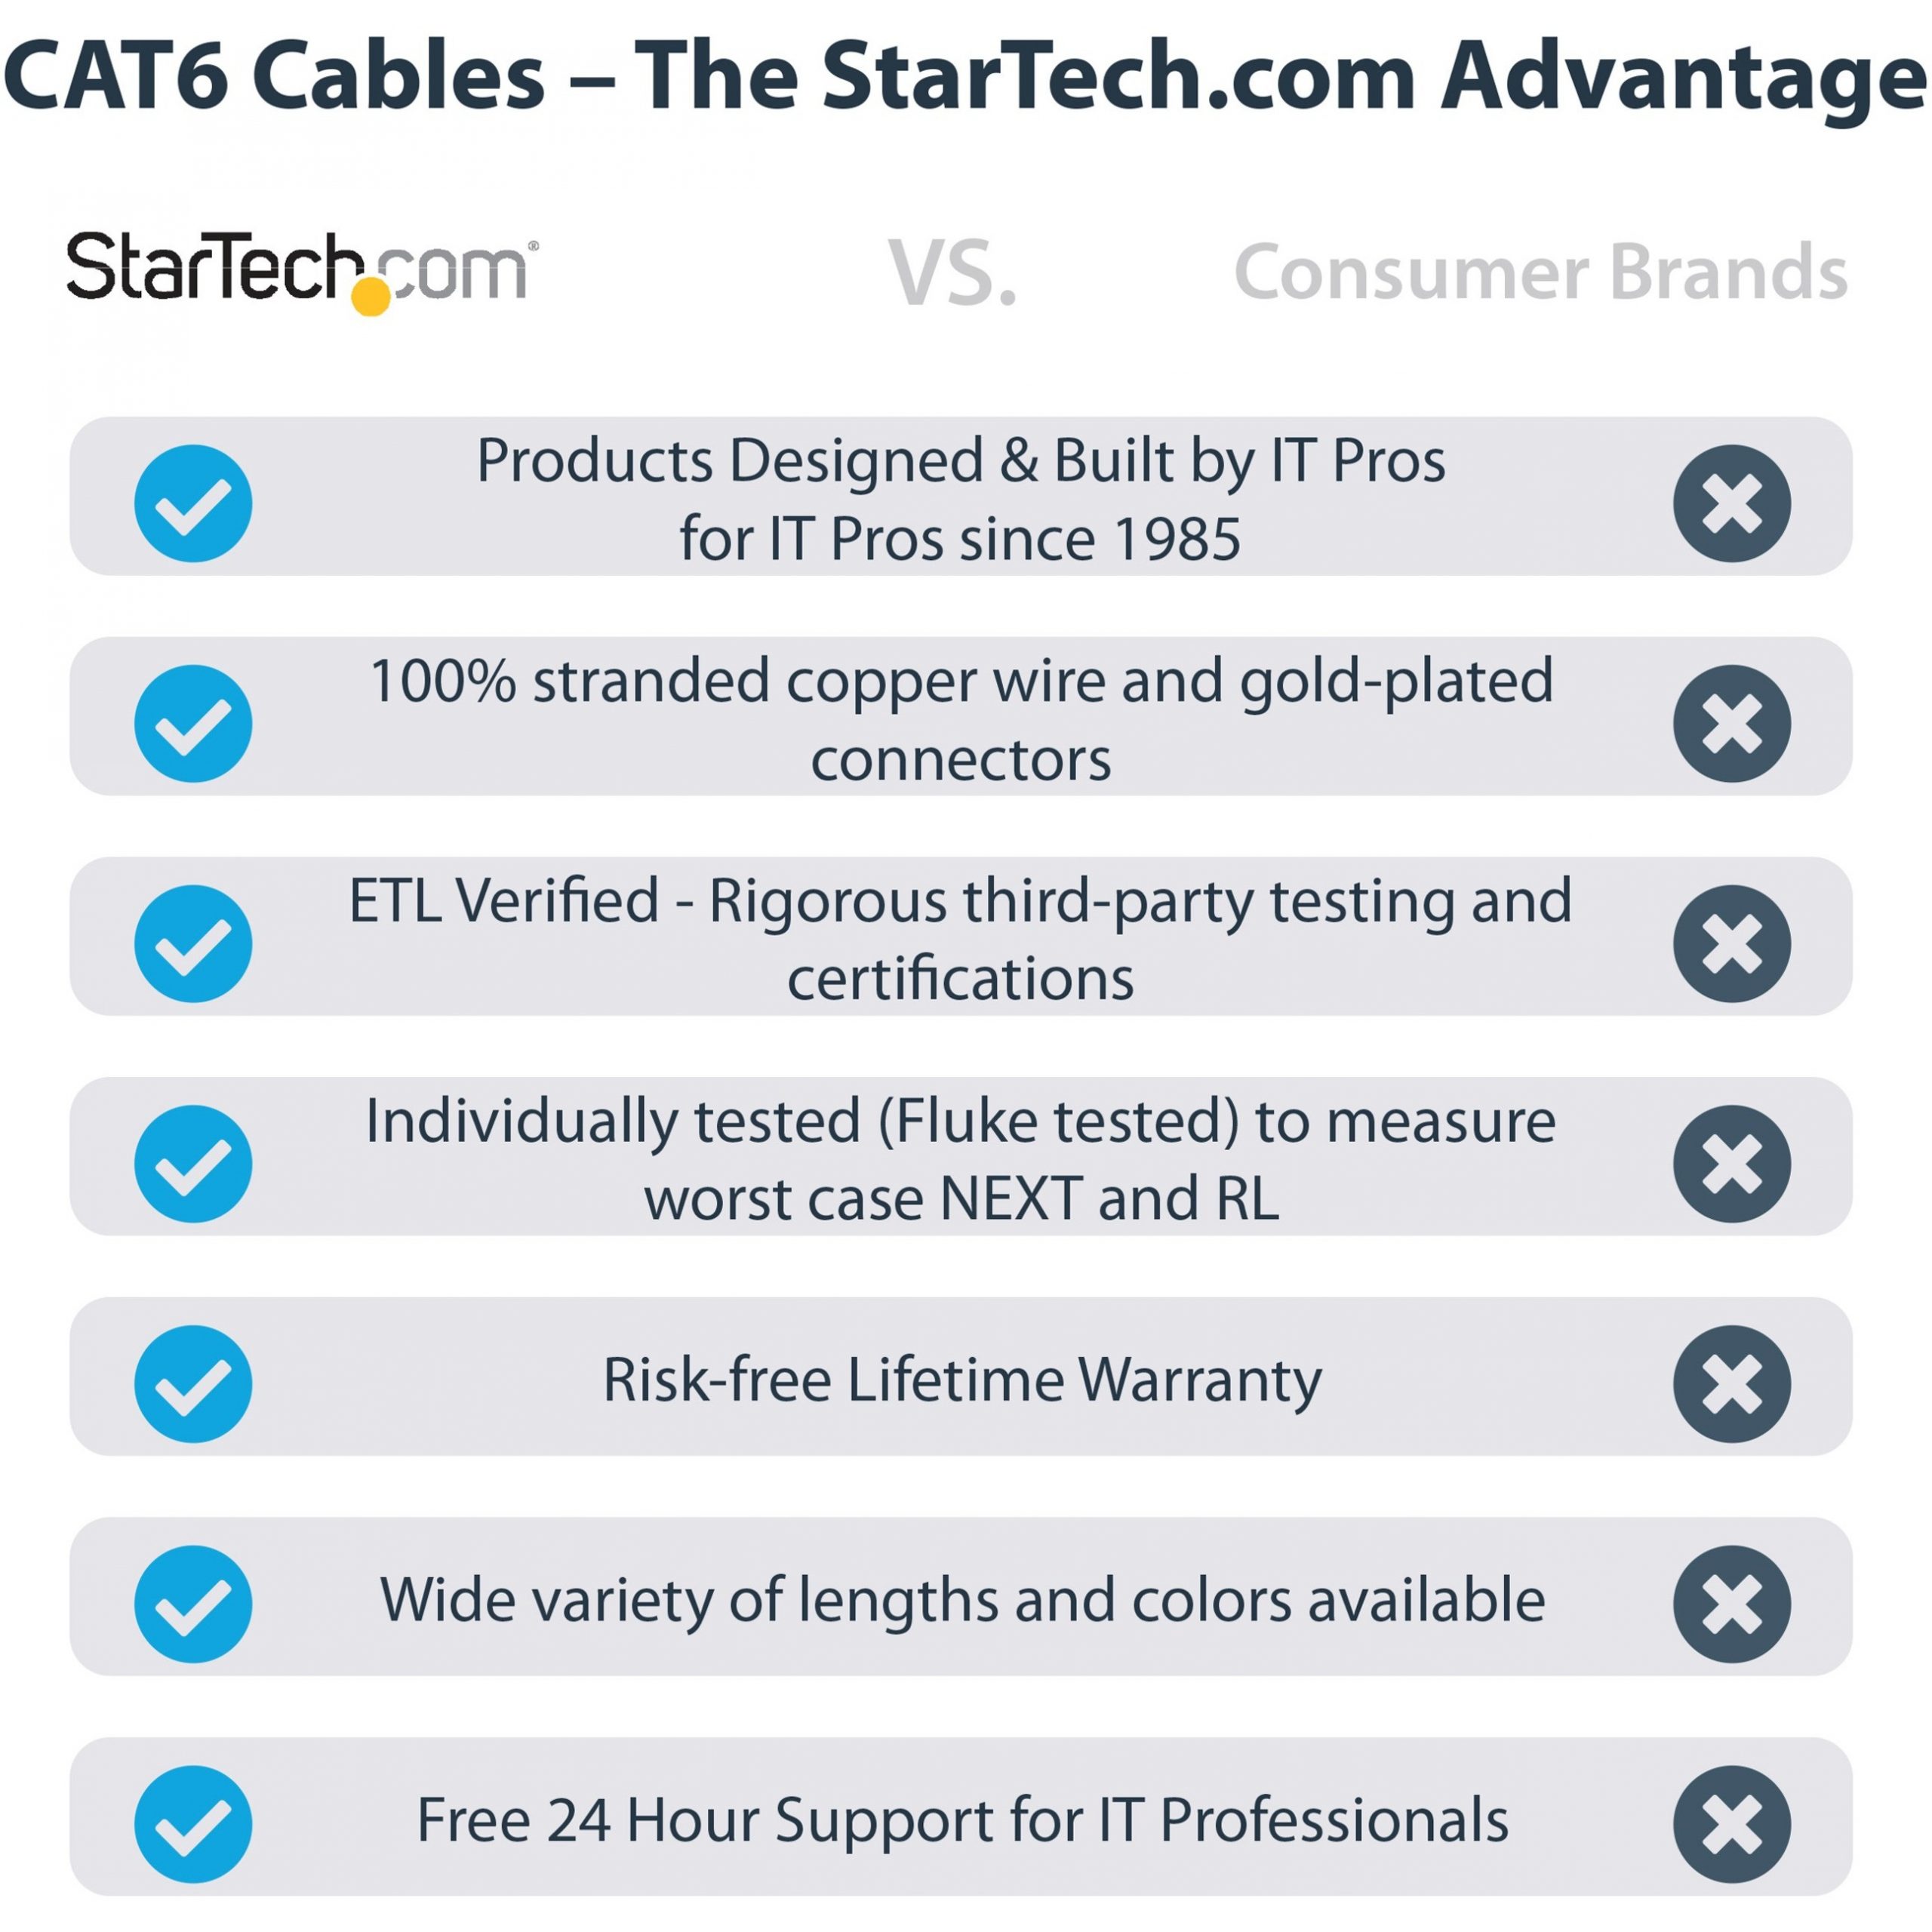 6ft CAT6 Ethernet Cable Blue Cat 6 PoE (C6PATCH6BL) - Cat 6 Cables, Cables